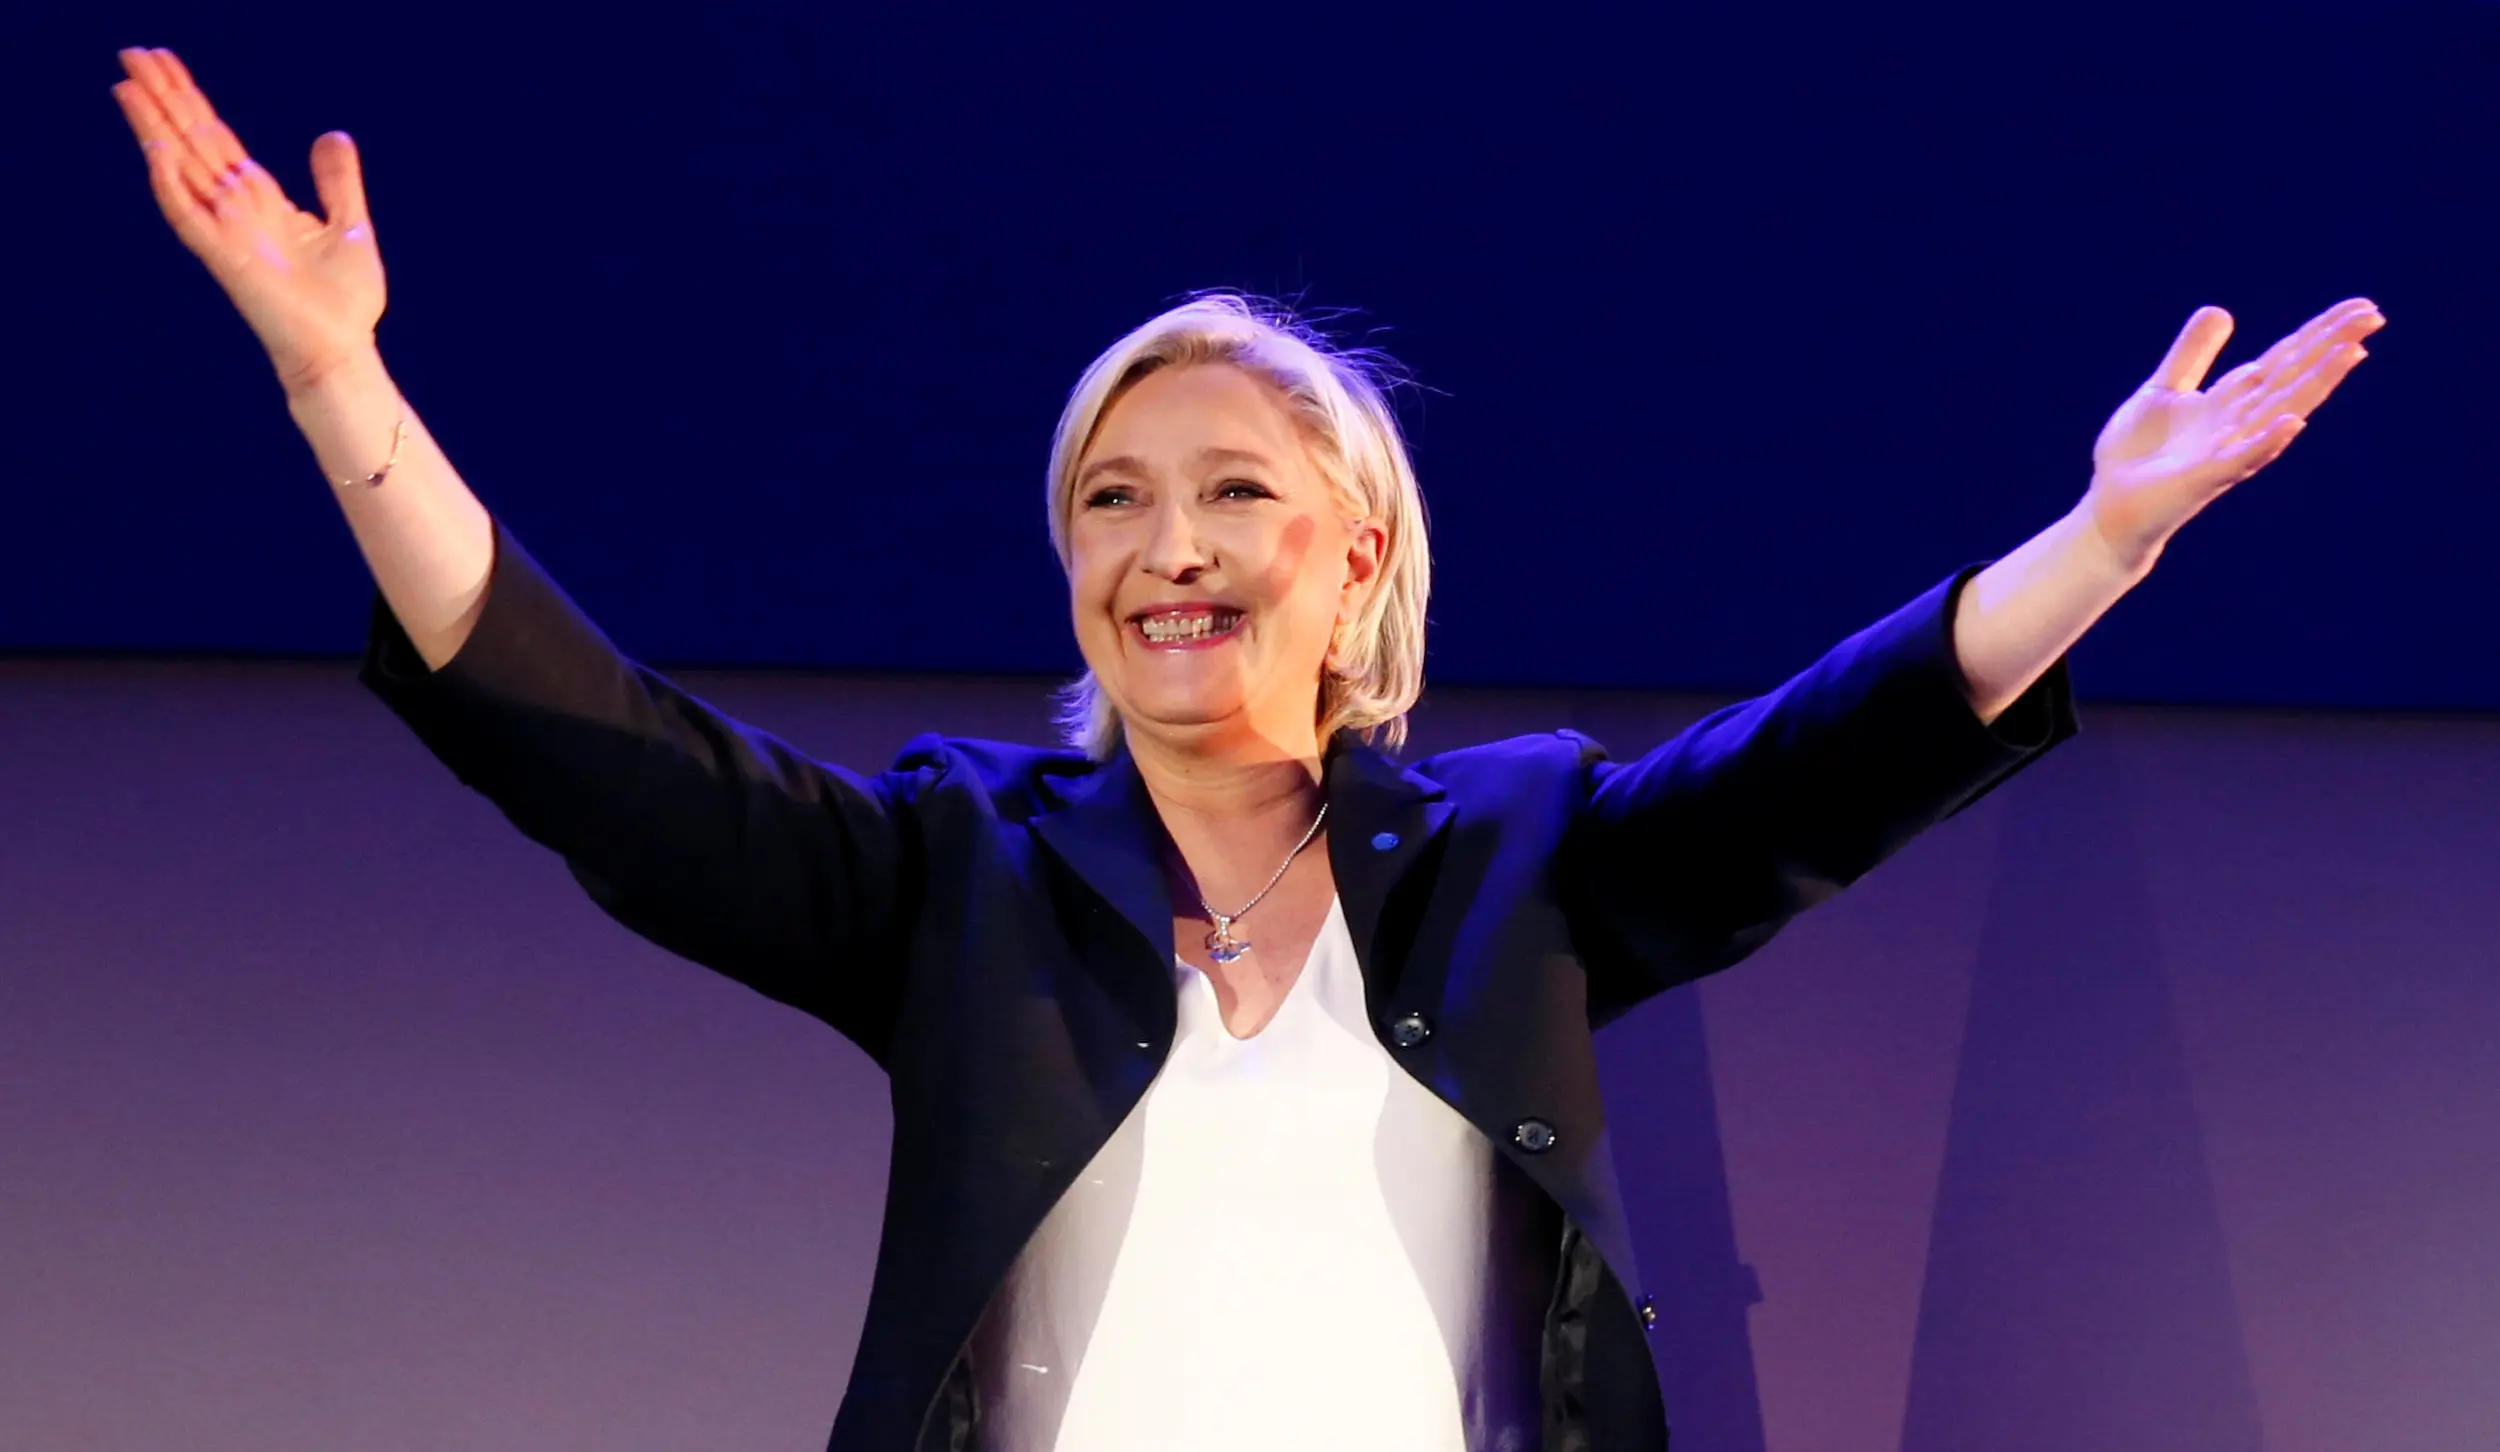 בחירות לנשיאות צרפת 23 באפריל 2017